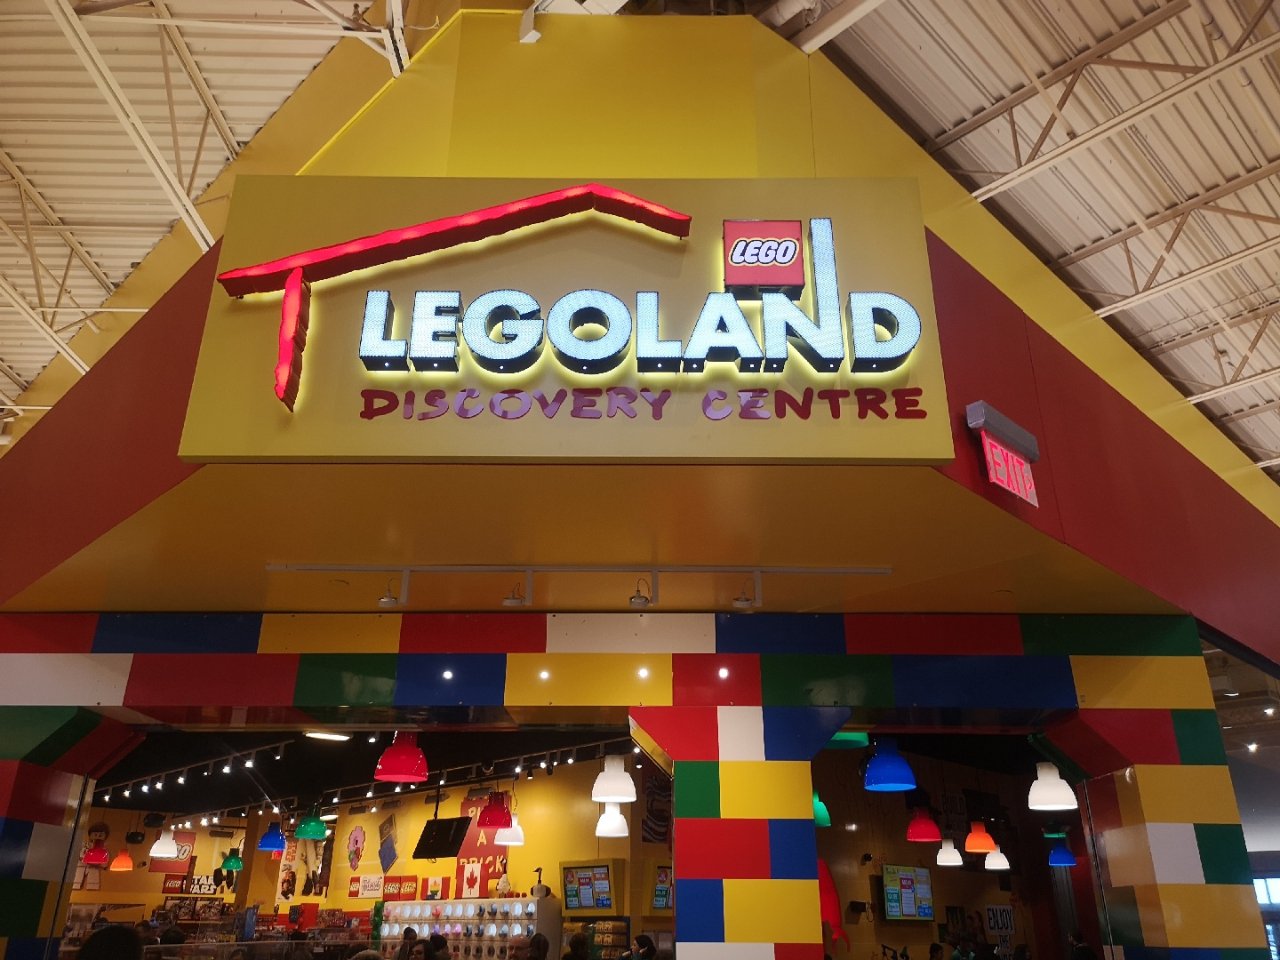 Lego 乐高,加拿大吃喝玩乐,周末好去处